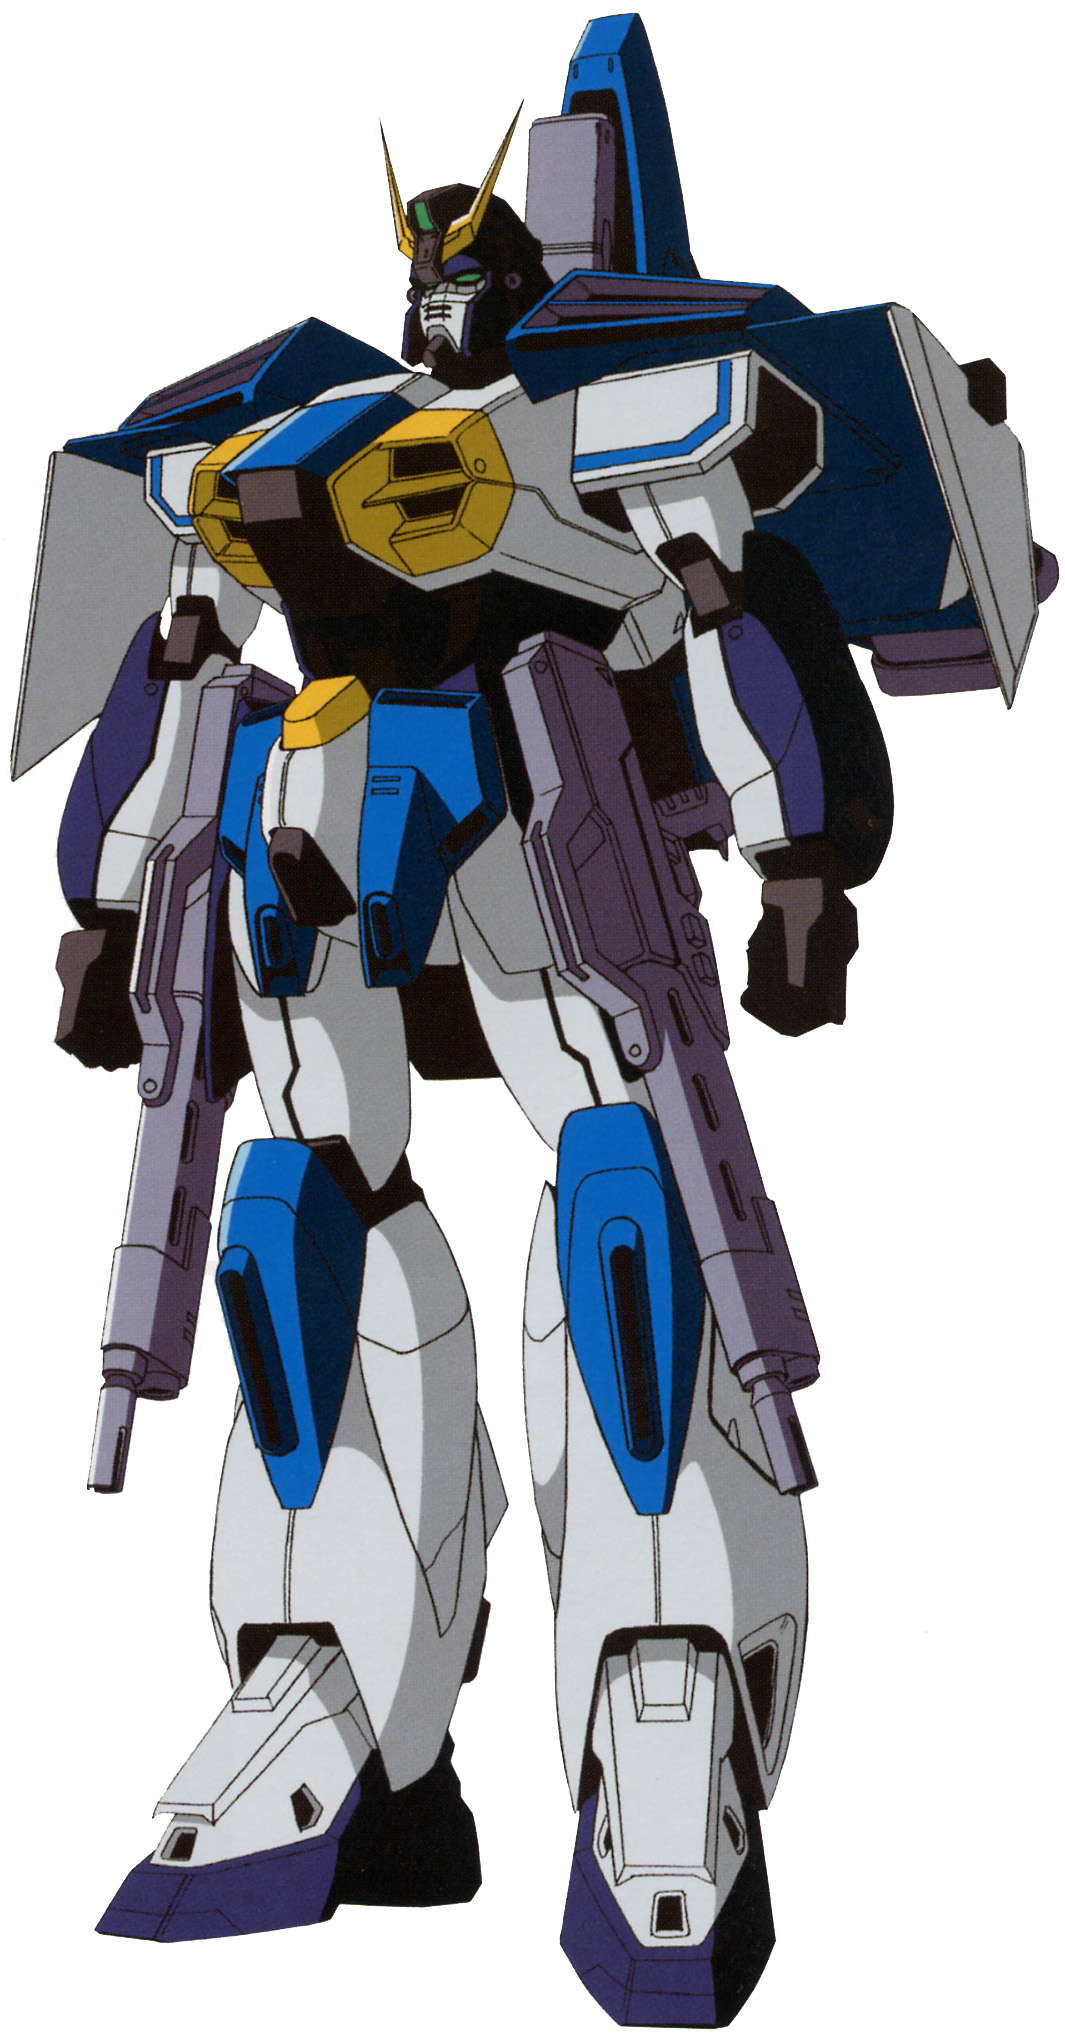 HG 1/144 Gundam Air Master Burst